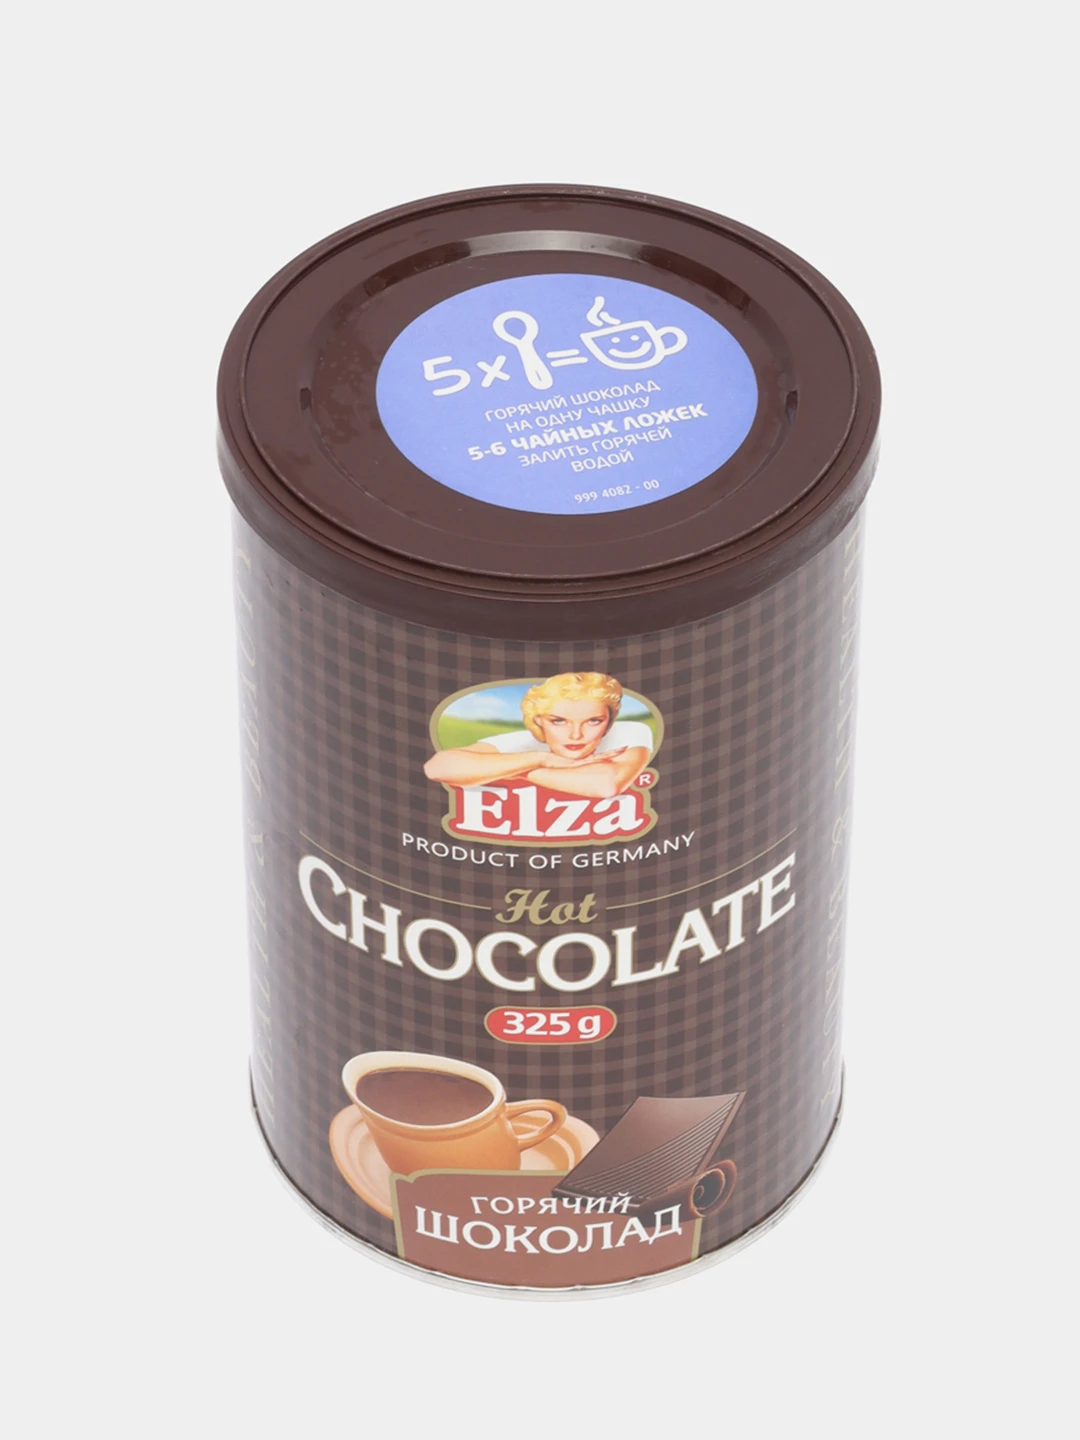 Горячий шоколад Elza 325г. Горячий шоколад, Elza, 325. Горячий шоколад Elza растворимый порошкообразный напиток 325 г.